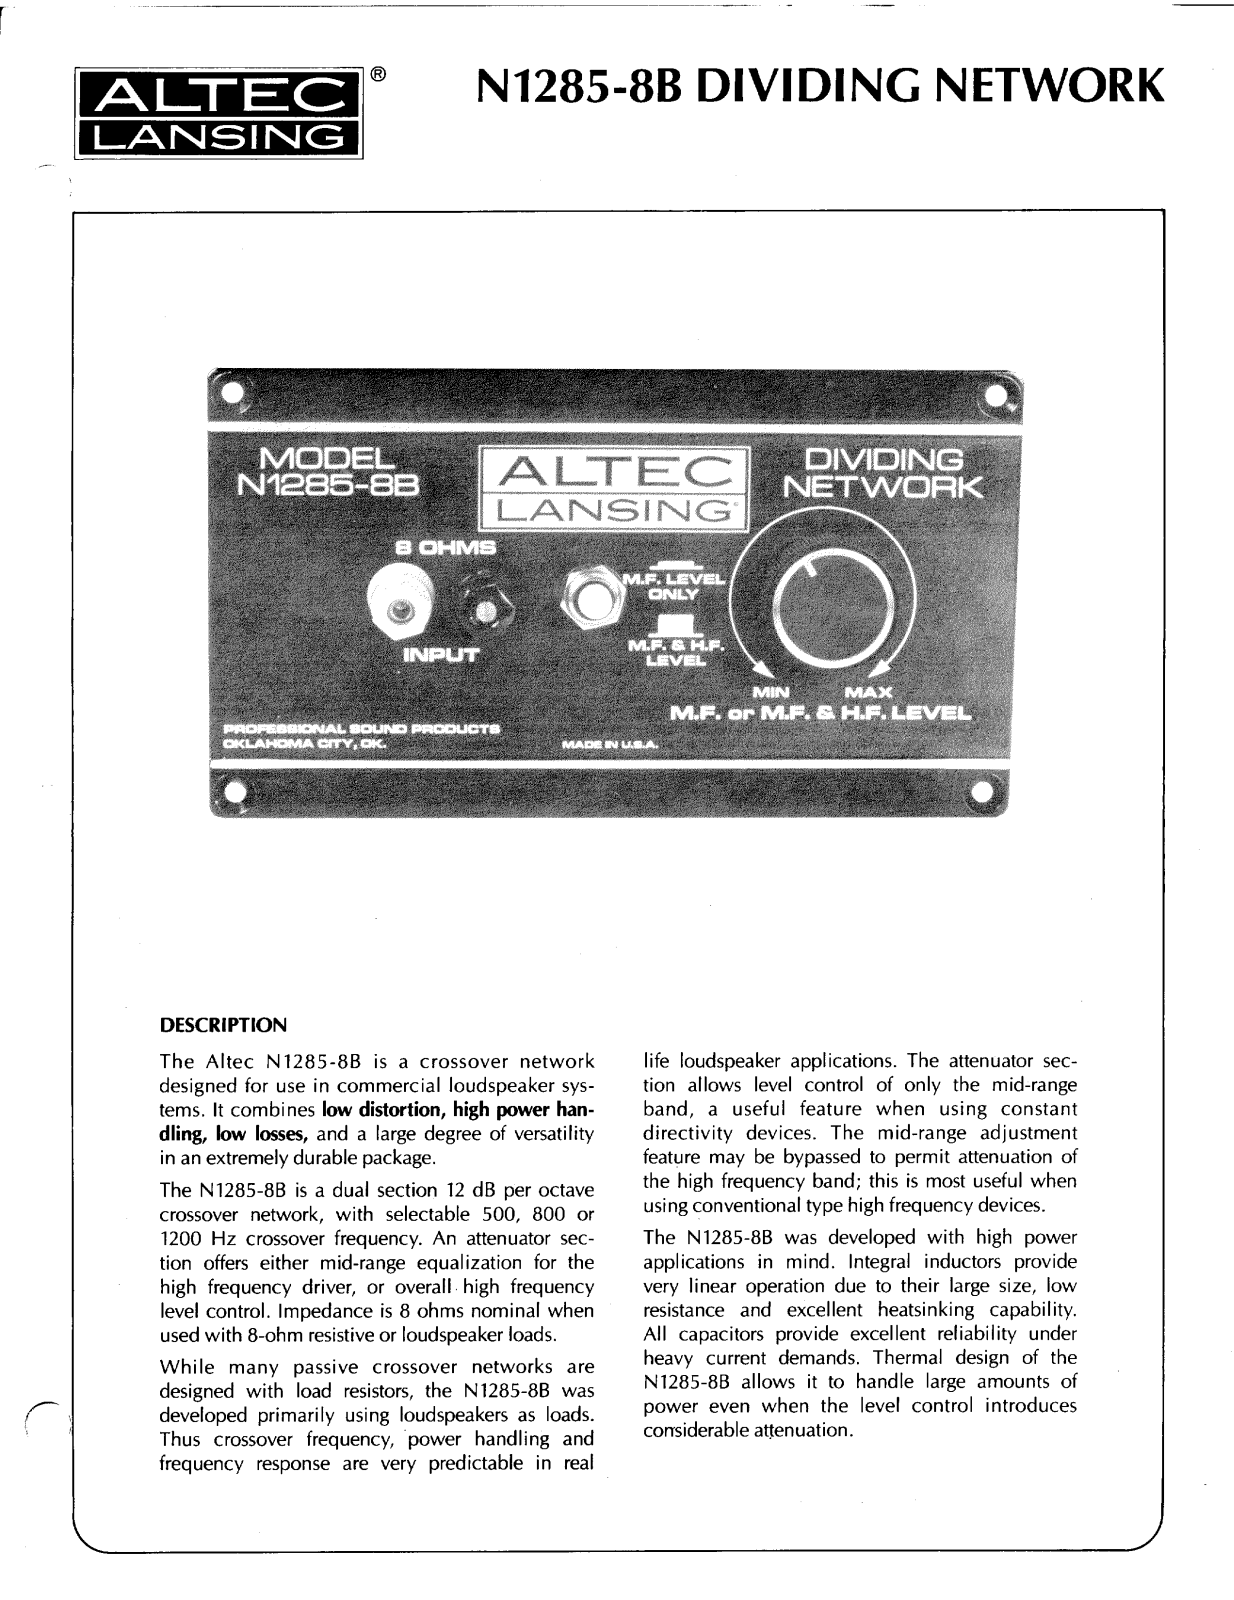 Altec lansing N1285-8B Manual